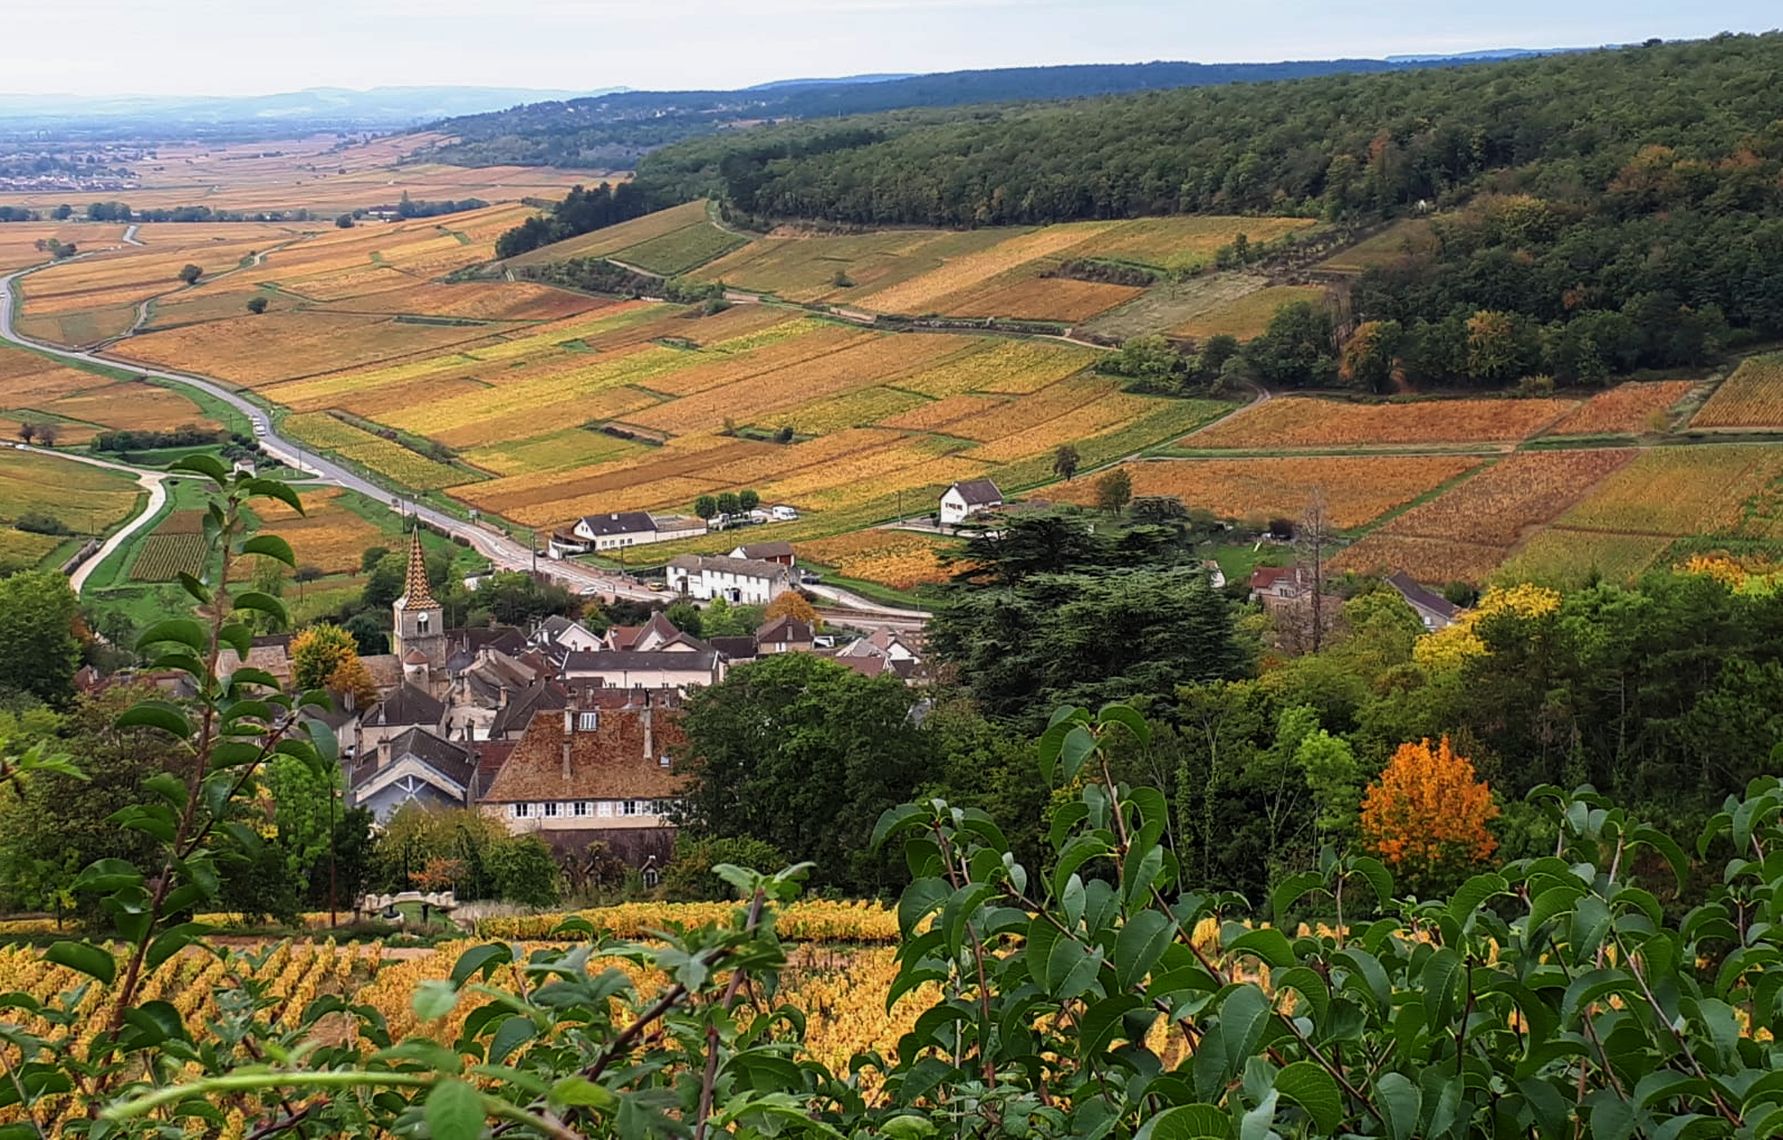 MEET PROJECT PARTNERS Burgundy-Franche-Comté Region